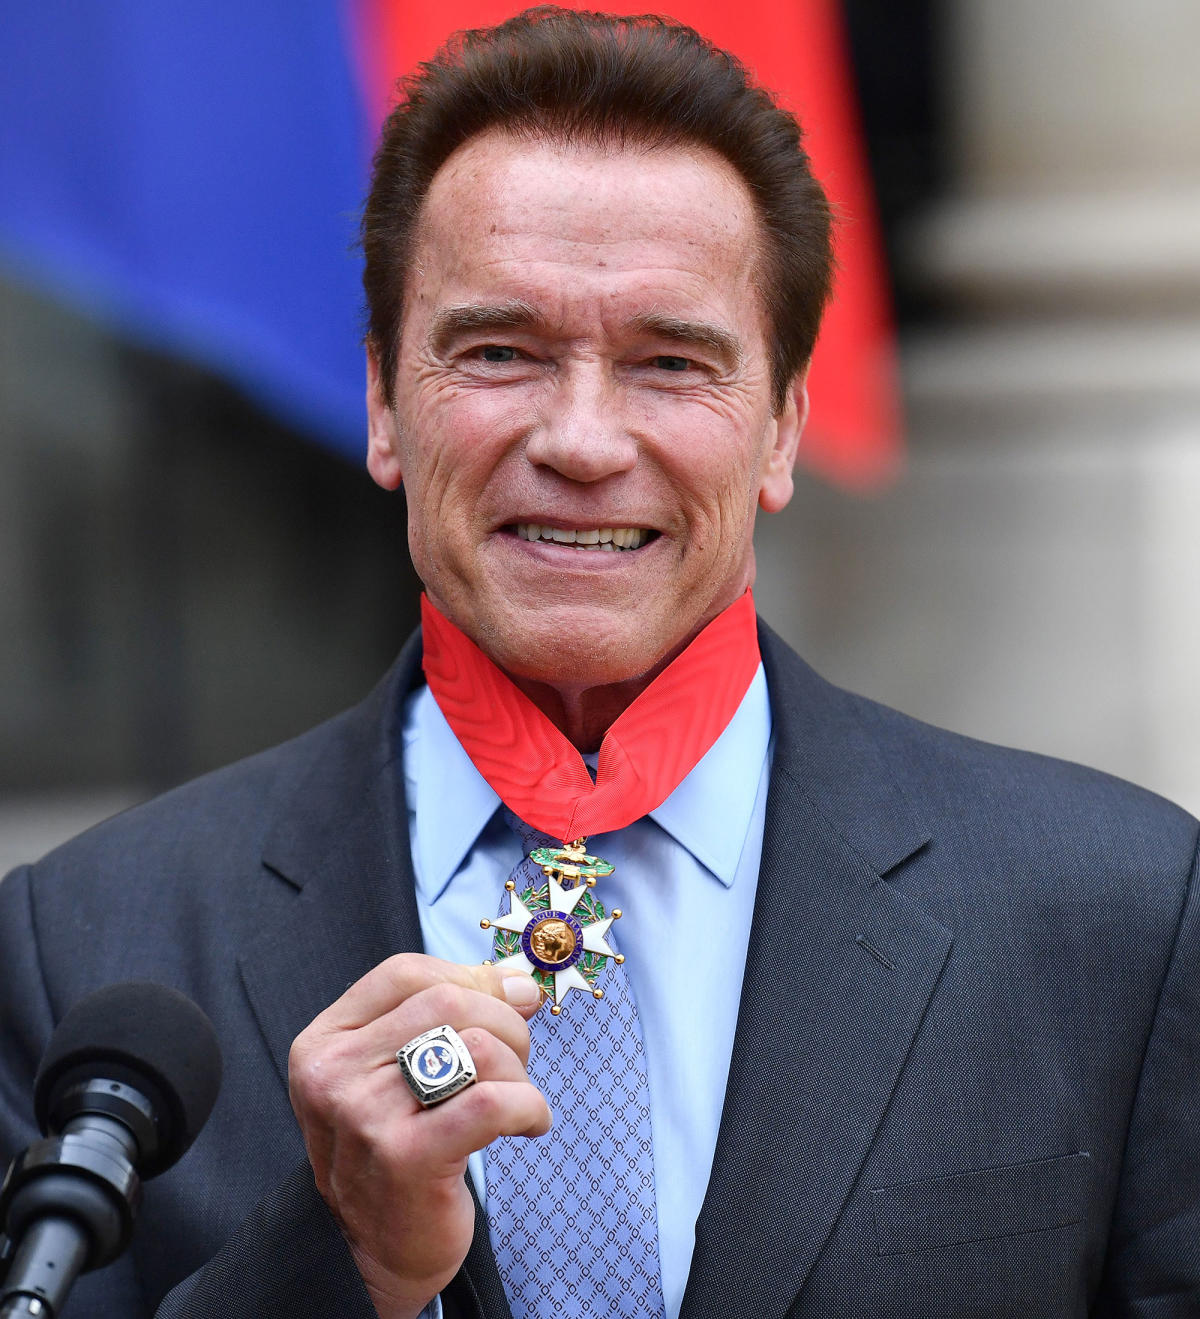 Arnold Schwarzenegger Receives France S Highest Honor For His Environmental Work